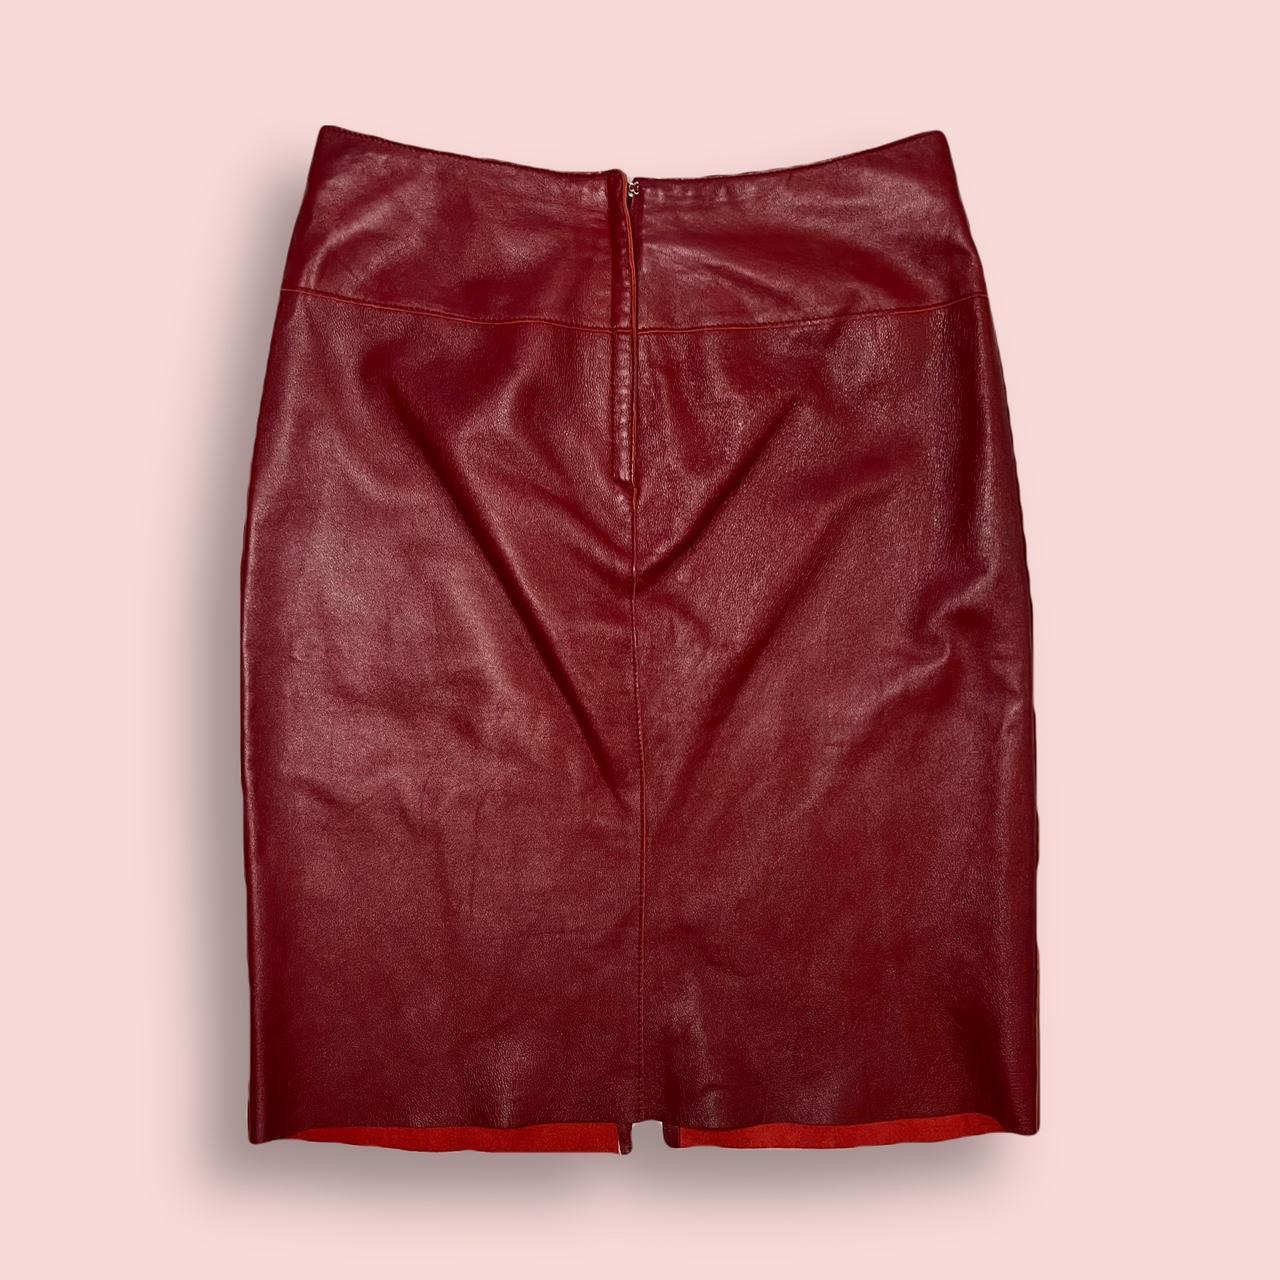 Bebe Women's Burgundy Skirt (2)